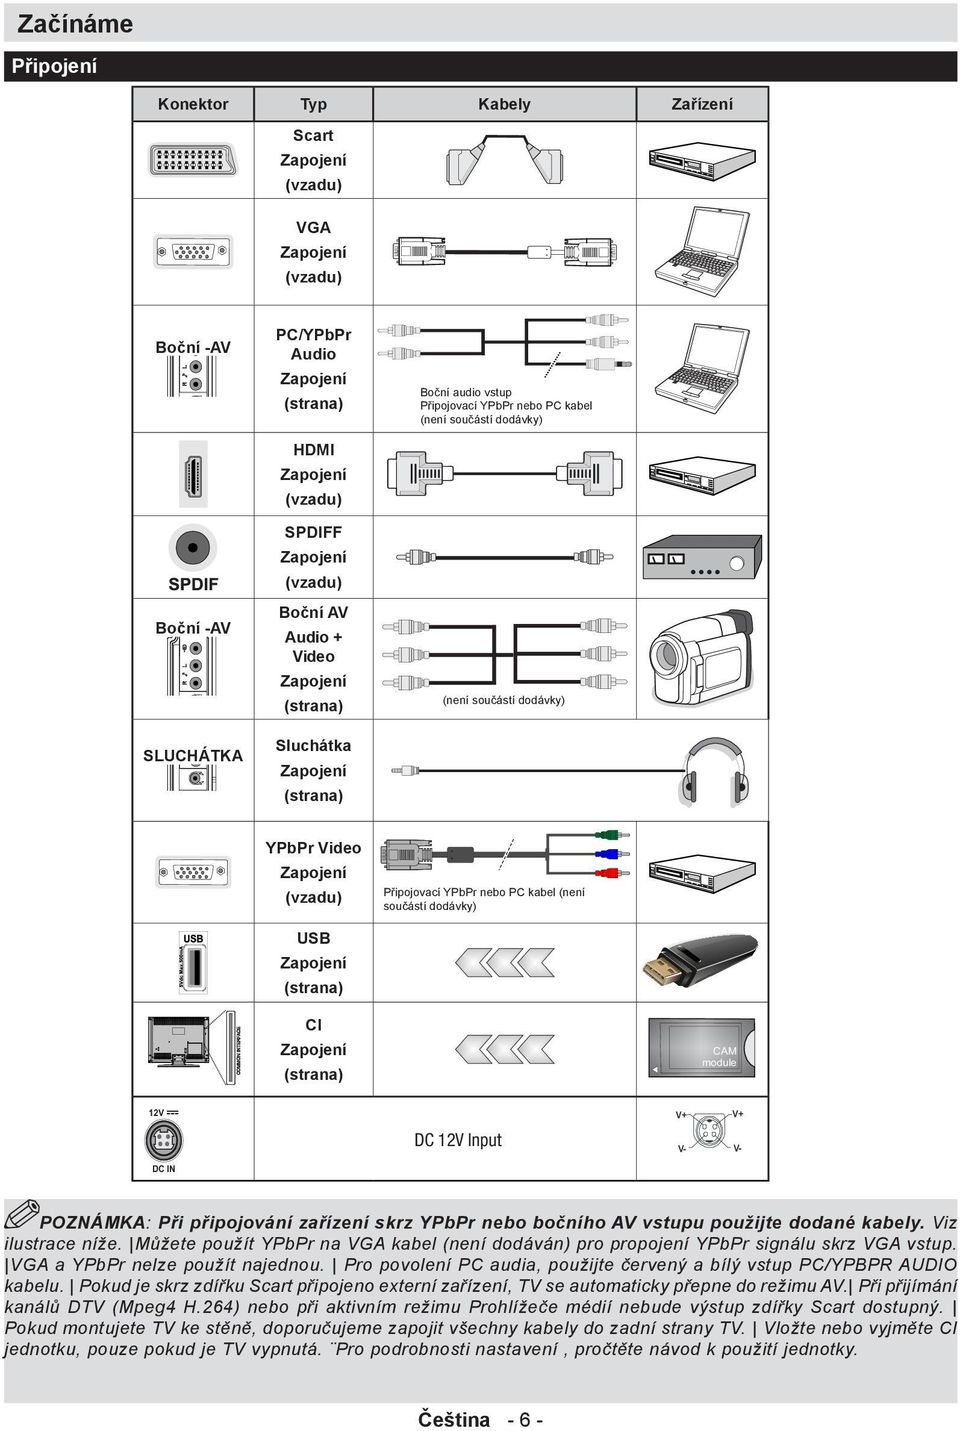 Připojovací YPbPr nebo PC kabel (není součástí dodávky) USB Zapojení (strana) CI Zapojení CAM module (strana) 12V DC 12V Input V+ V+ V- V- DC IN POZNÁMKA: Při připojování zařízení skrz YPbPr nebo